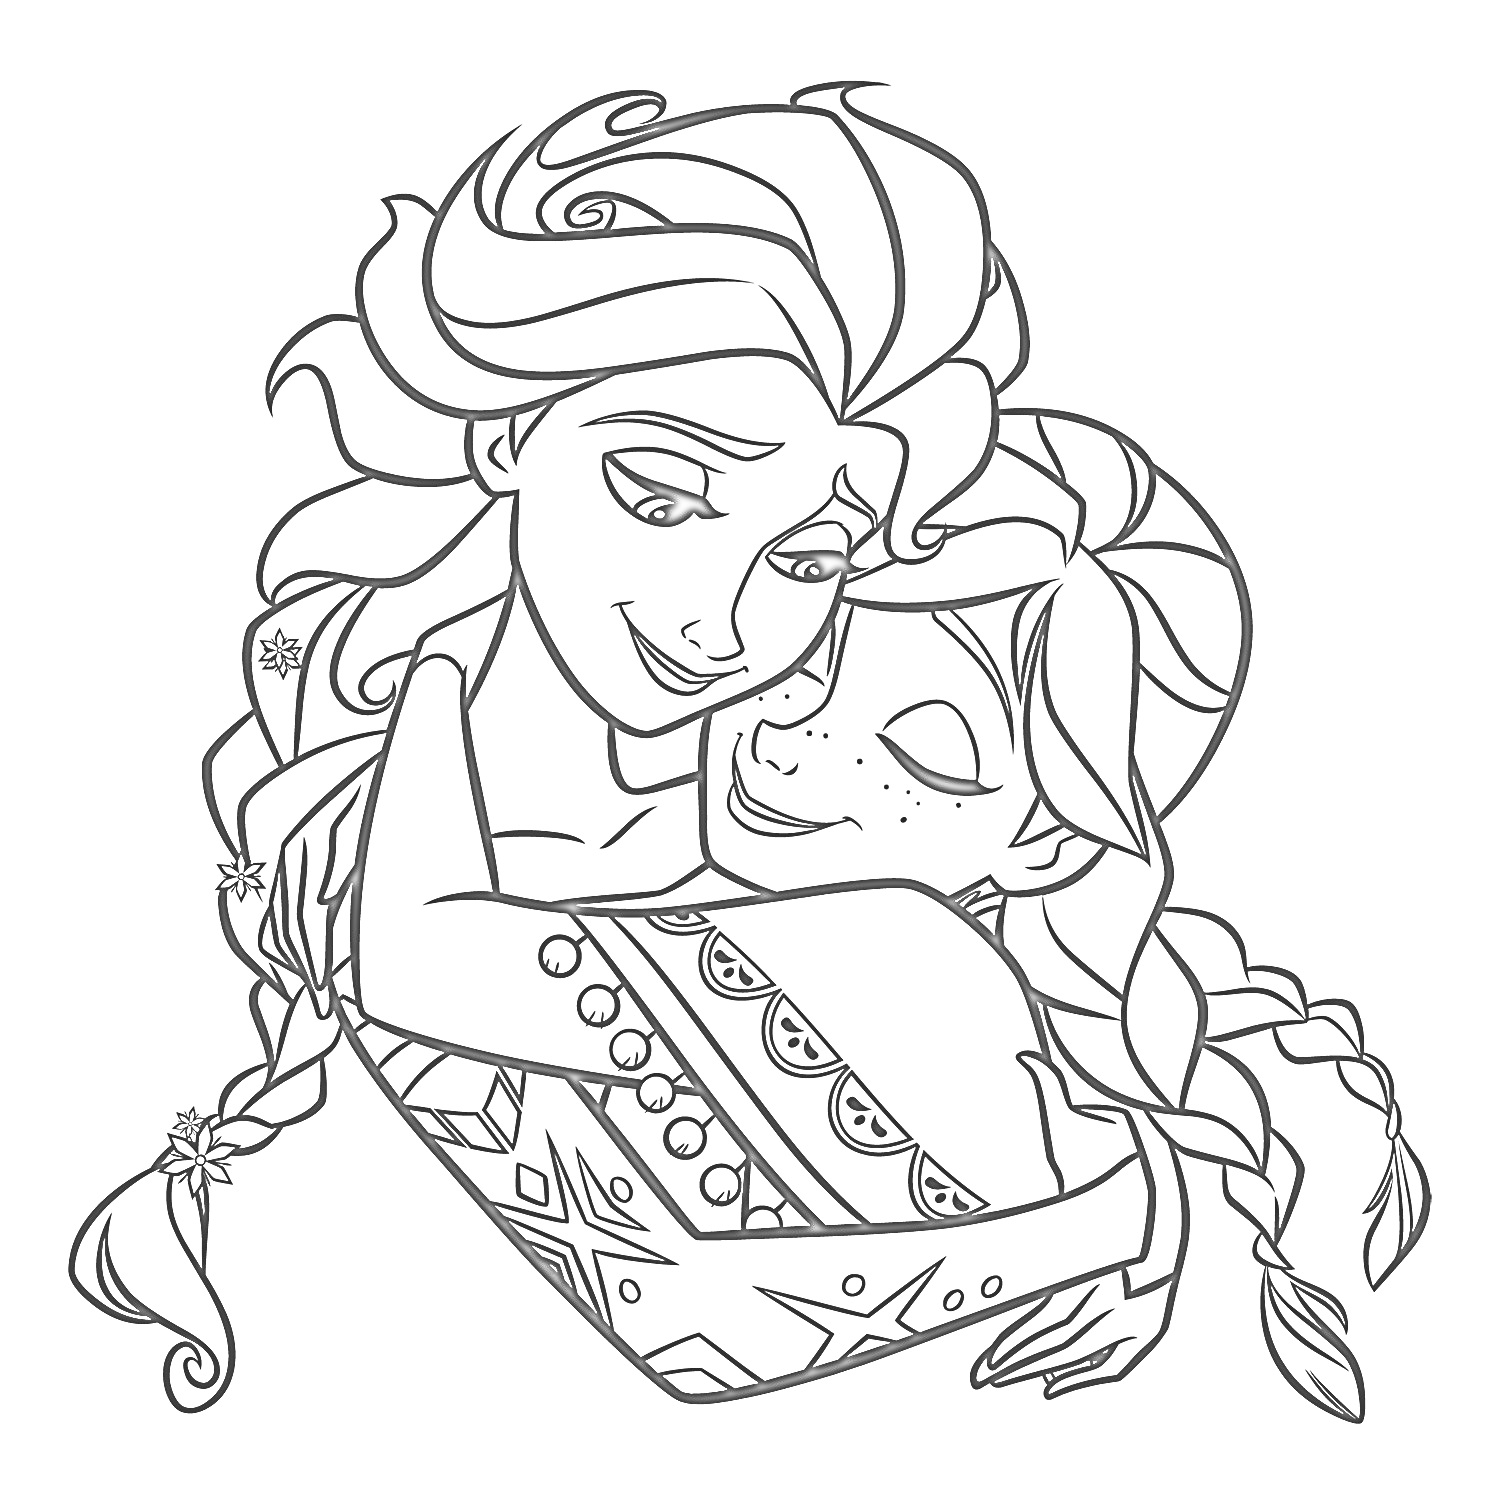 Эльза и Анна в объятиях, рисунок, косы, цветы в волосах, узор на платье